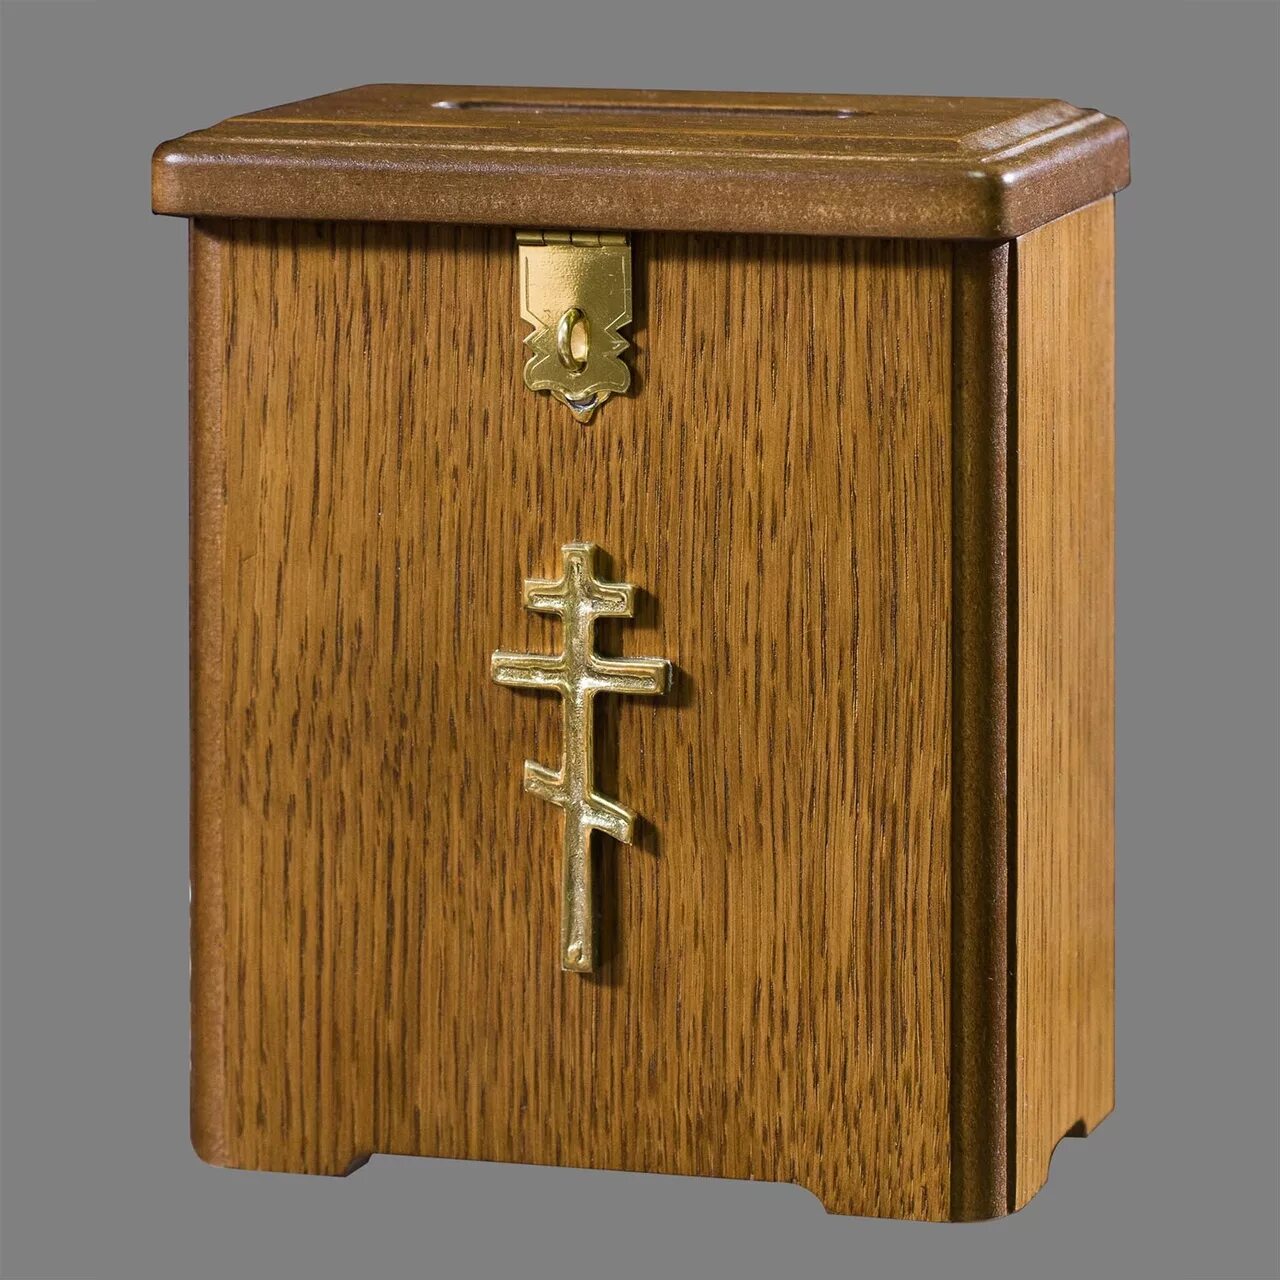 Церковные православный магазин. Церковный ящик для пожертвований. Церковные кружки для пожертвований. Ящик для пожертвований деревянный. Ящик для пожертвований деревянный для храма.